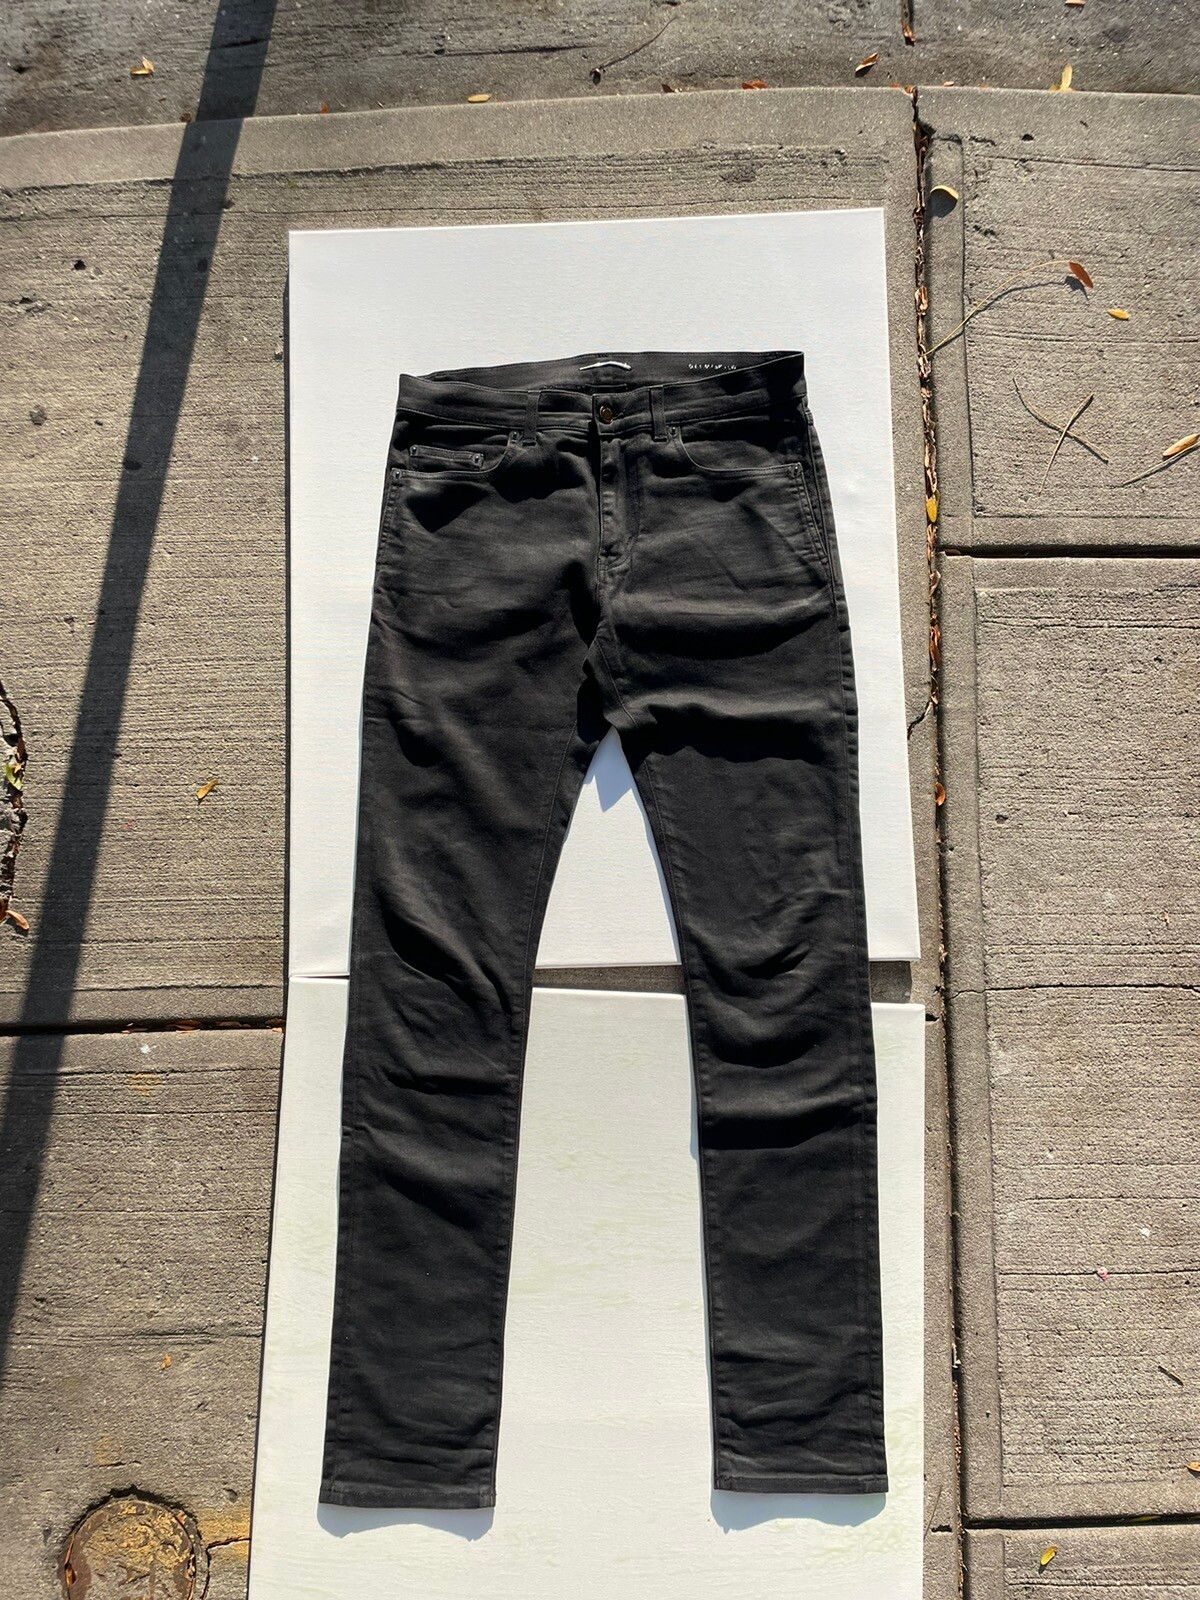 Saint Laurent Paris Black Saint Laurent d02 jeans | Grailed